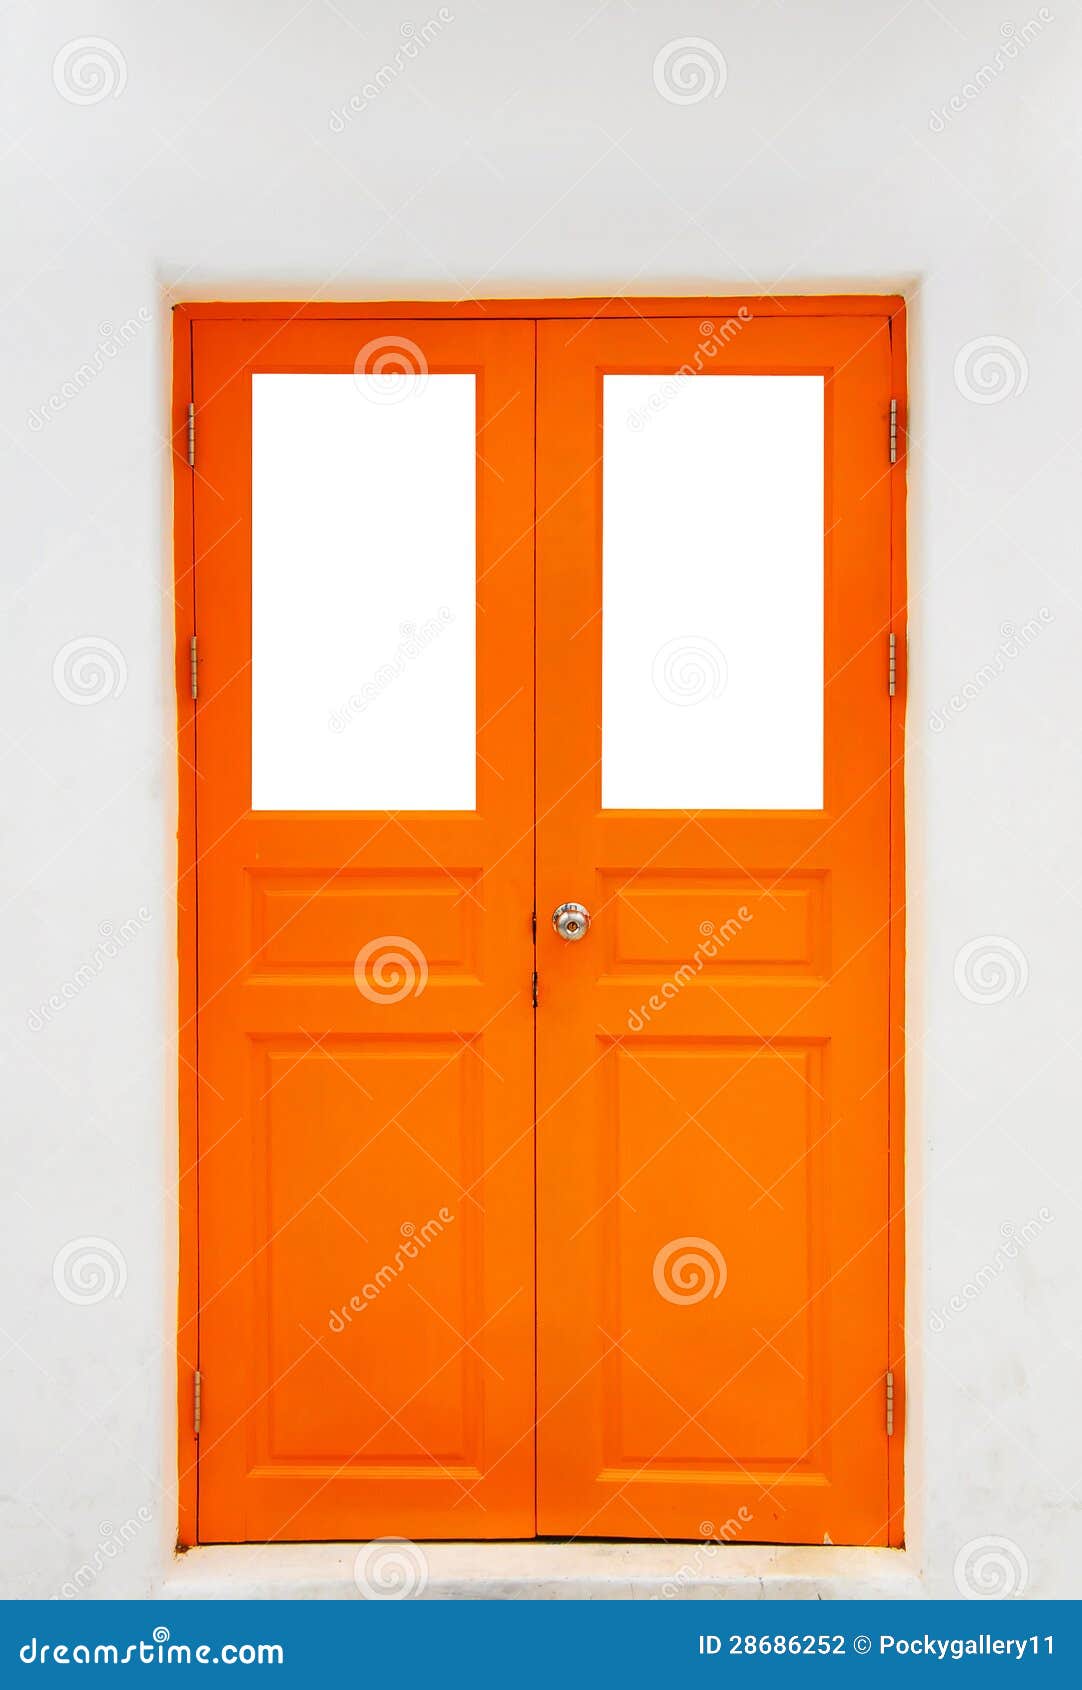 绿房子的前台橙色门 .高清摄影大图-千库网